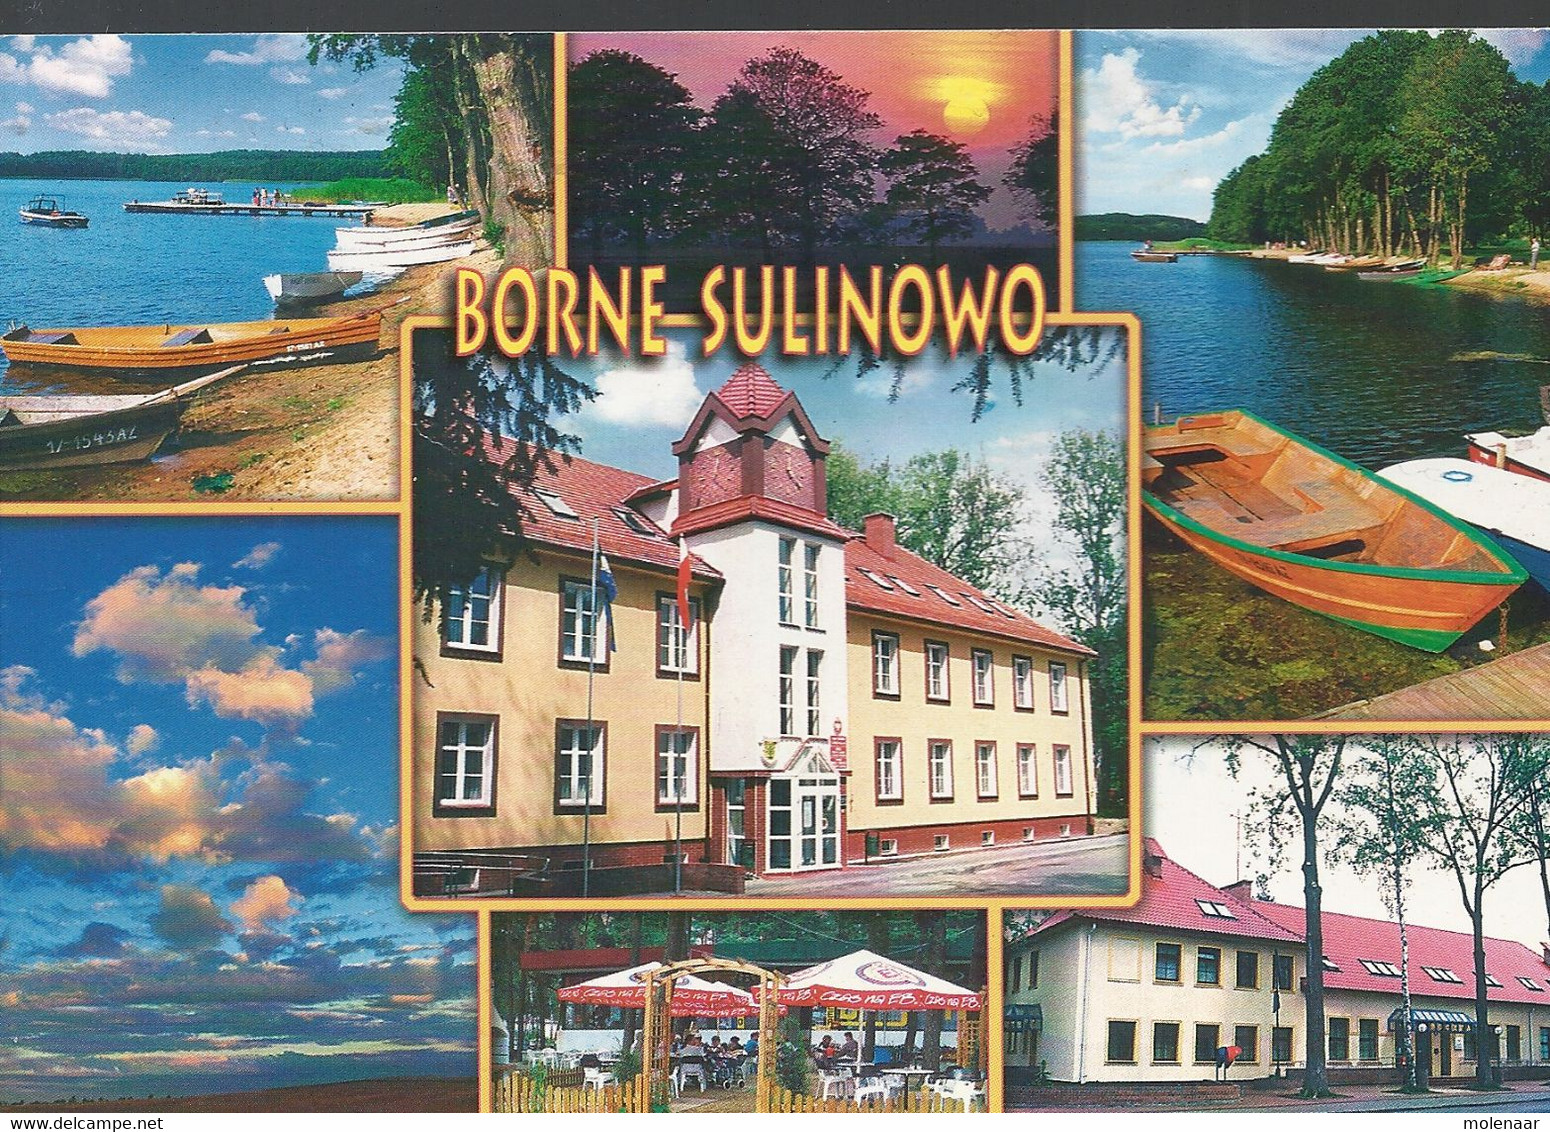 Polen Postkaart Uit 2006 Met 2 Zegels (3807) - Briefe U. Dokumente